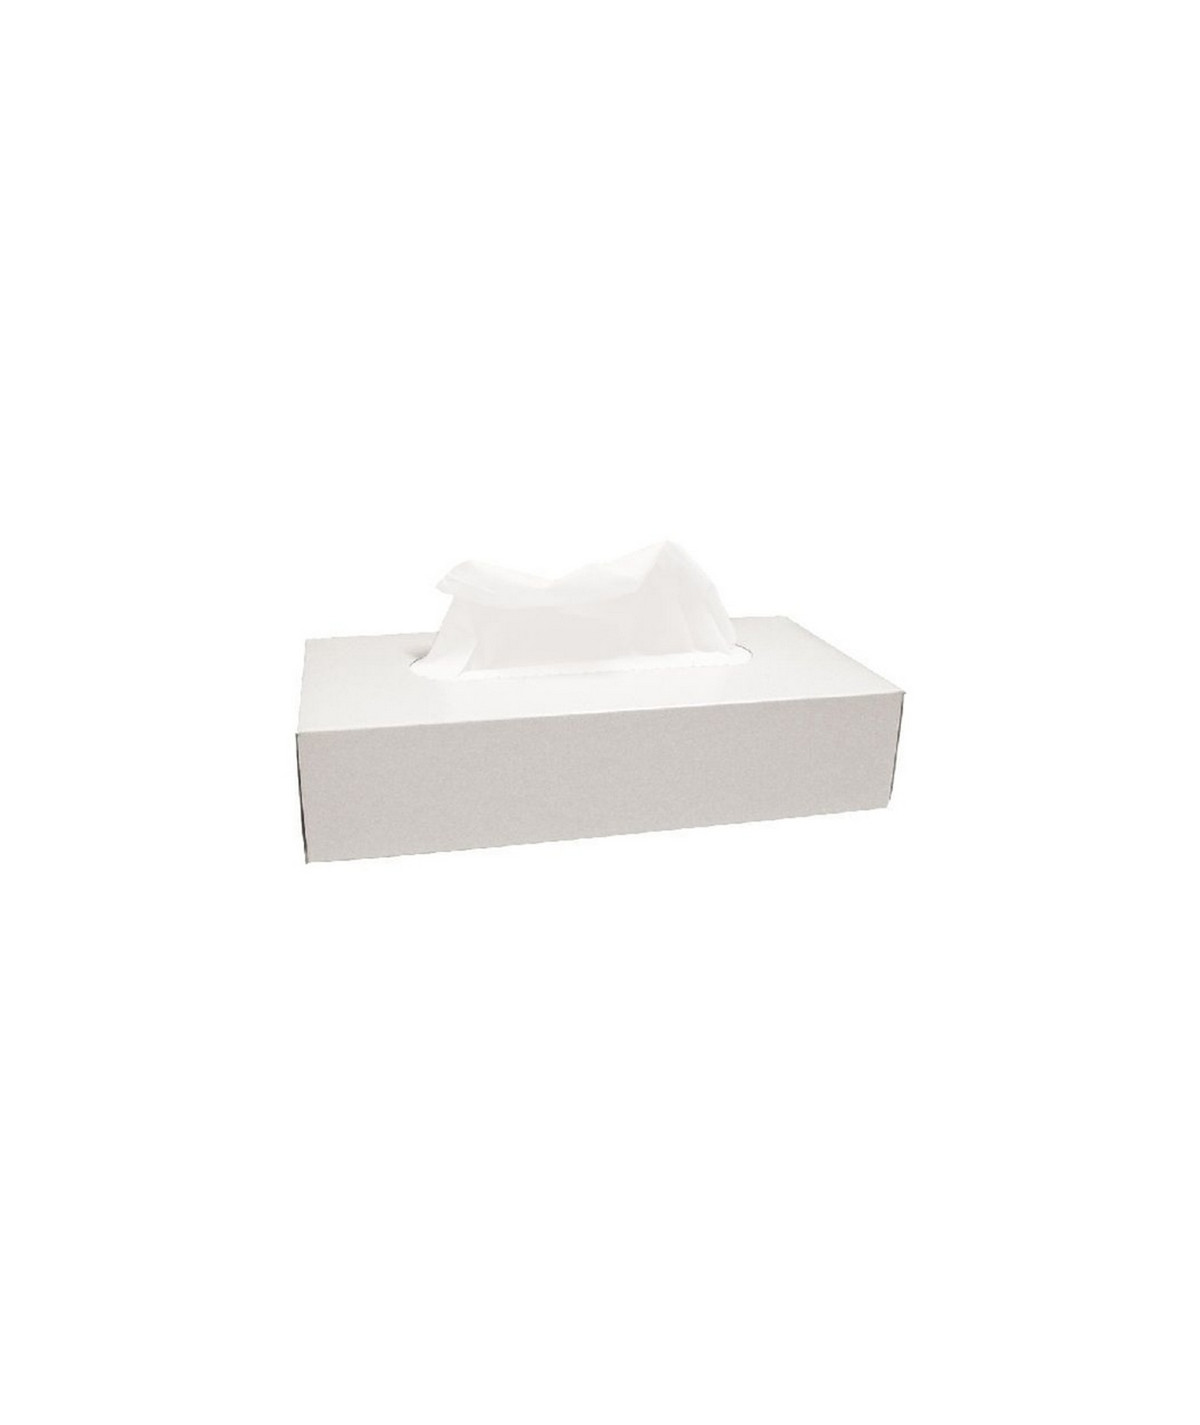 Boîte mouchoirs pure ouate blanche lisse 2 plis 22x23cm